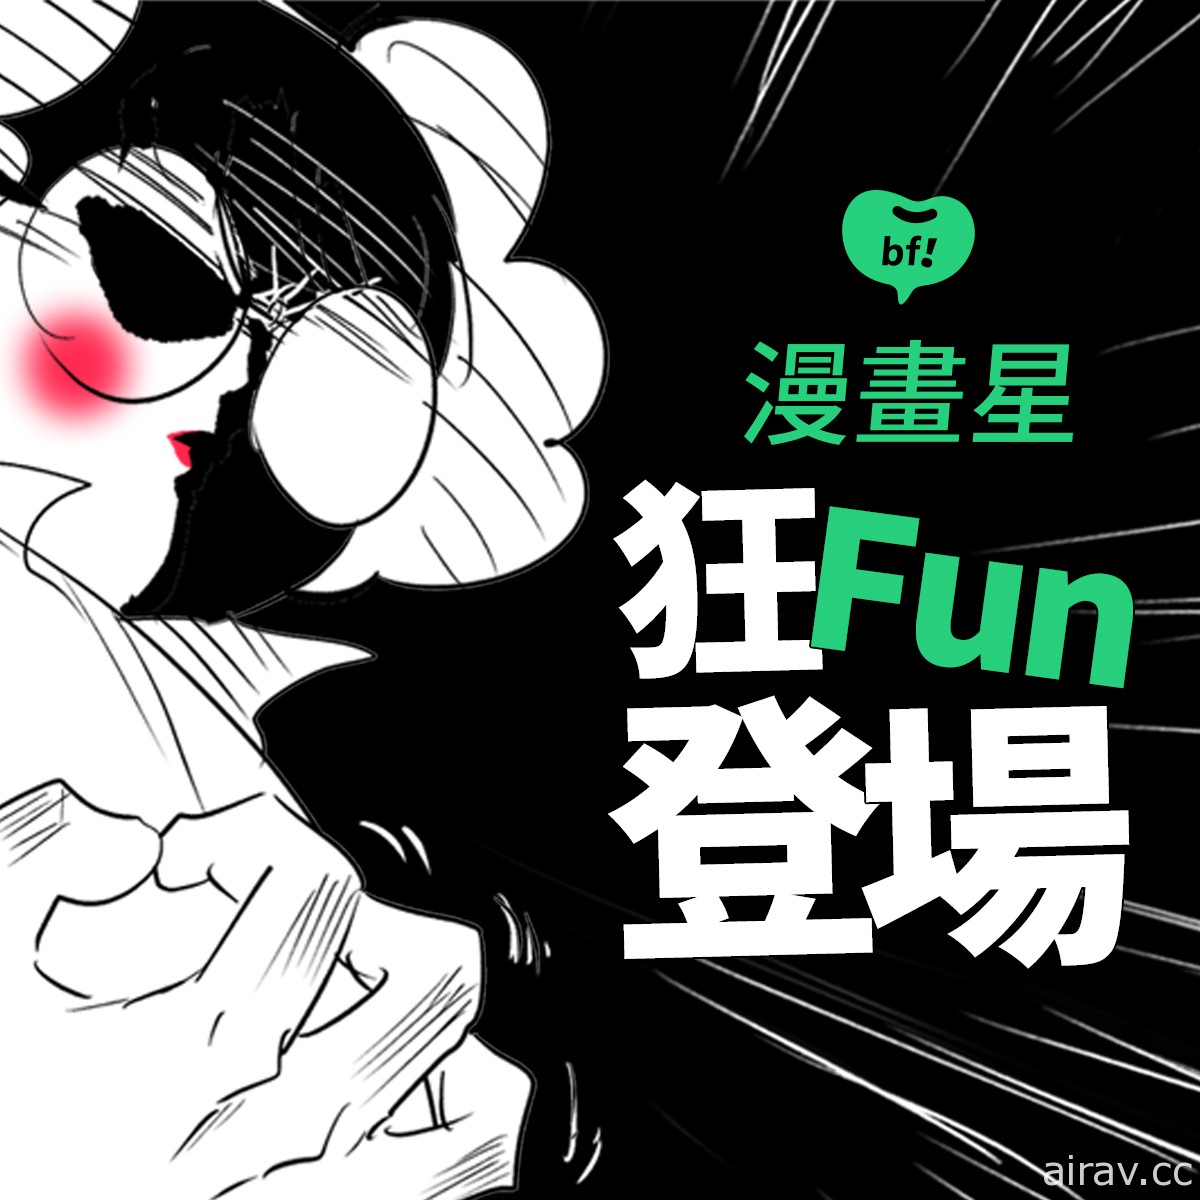 橘子集团推出 beanfun!“漫画星”挹注五亿资金 期许成为台湾原创最佳推手